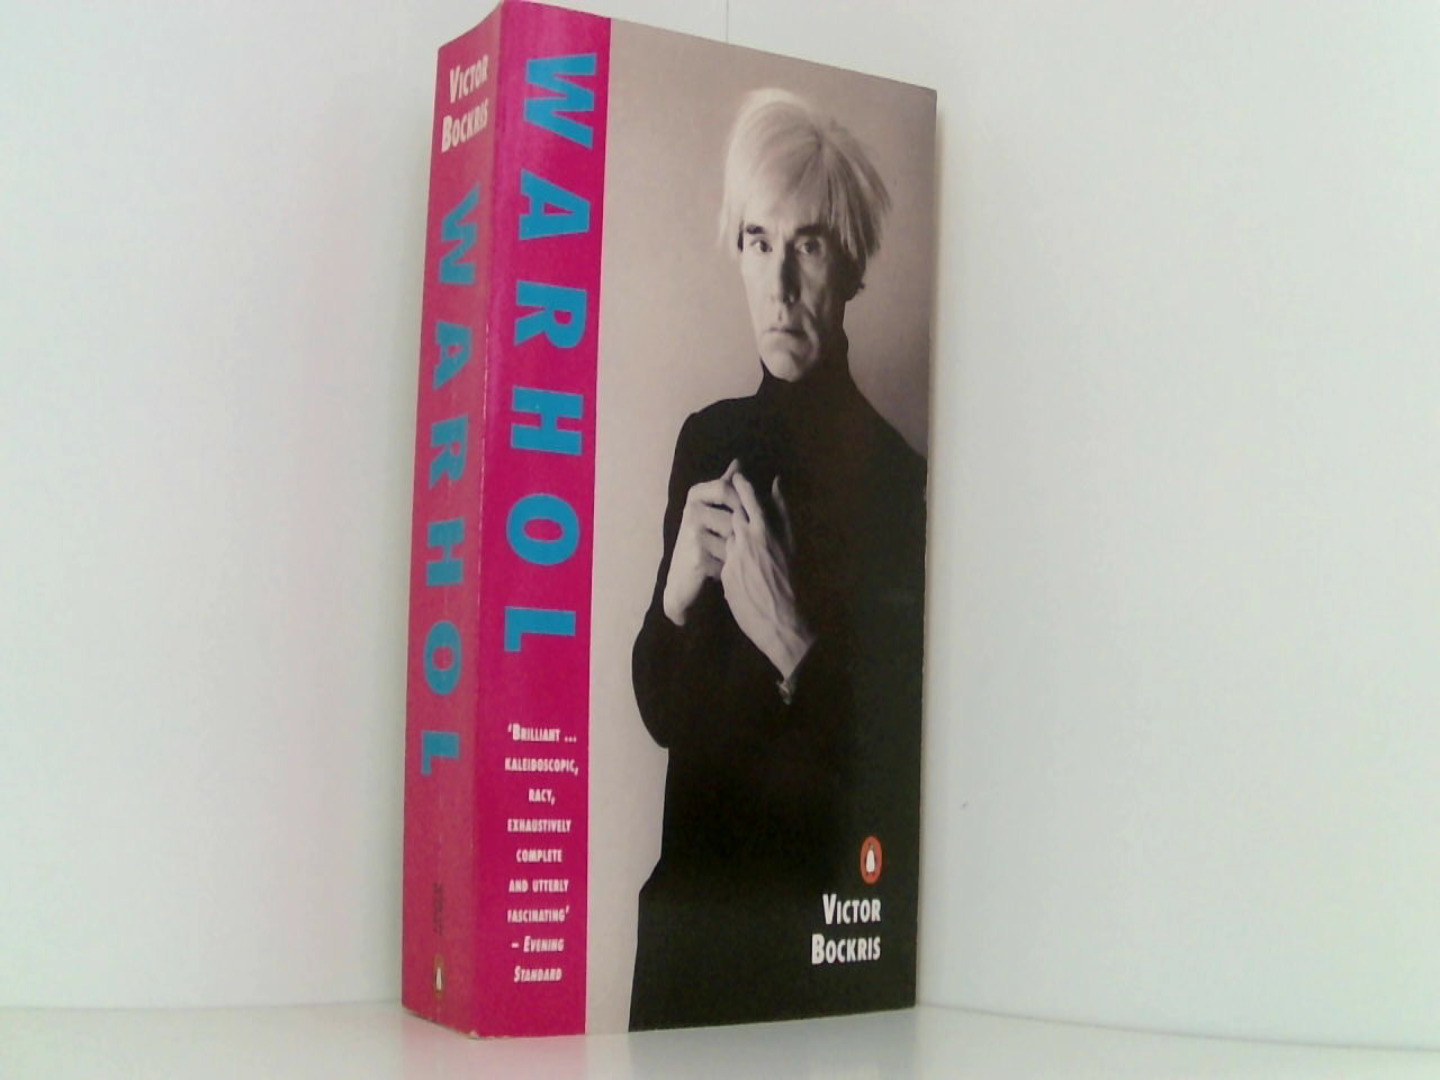 Warhol (Penguin non-fiction)